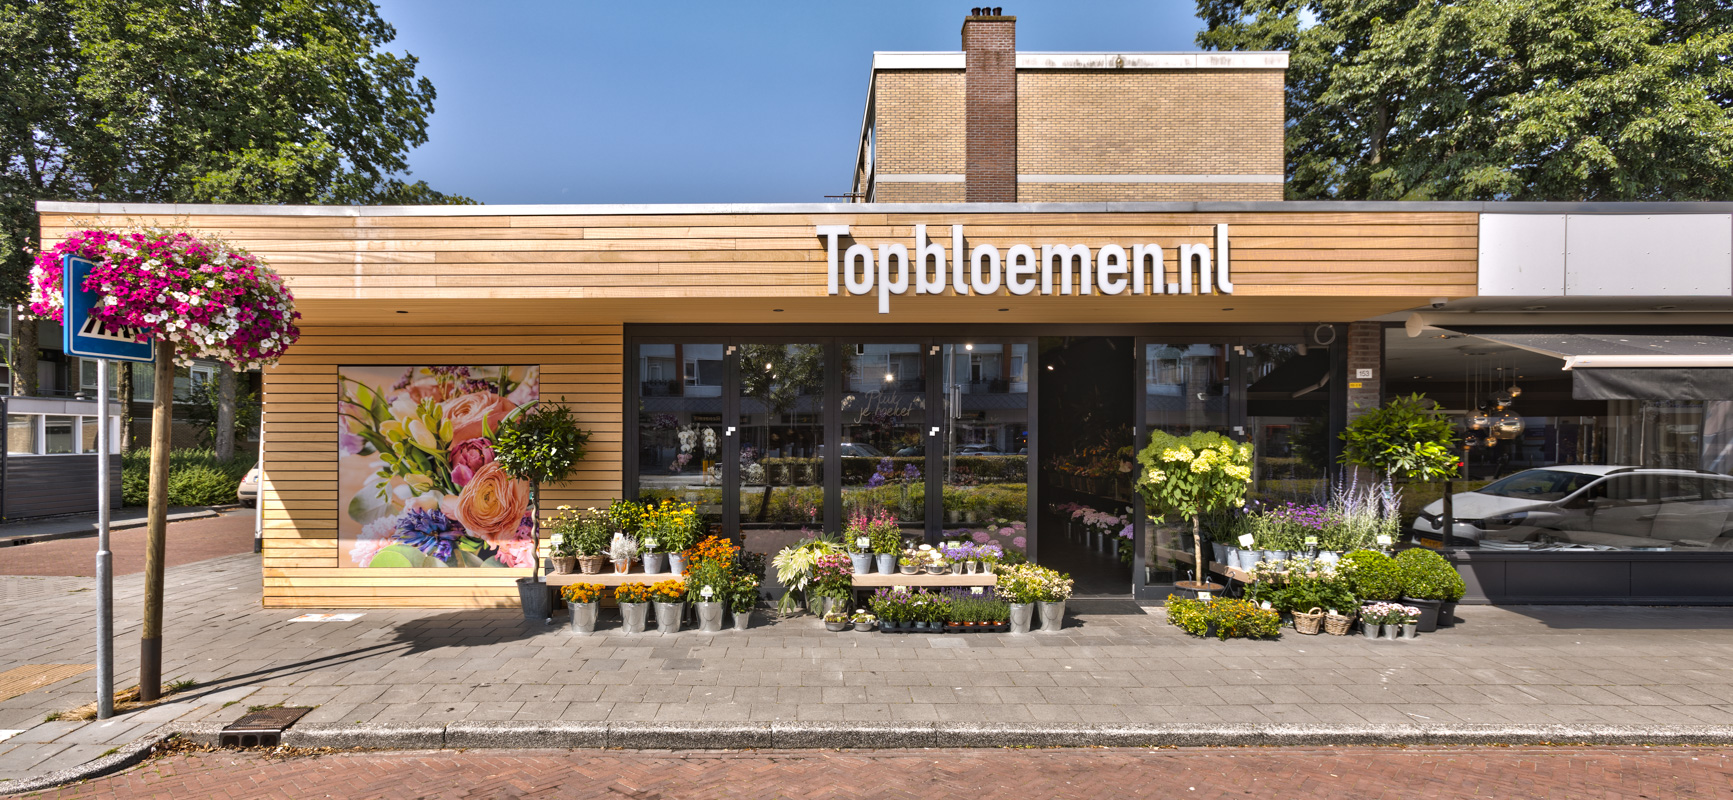 Topbloemen.nl | Amstelveen - Retailketens